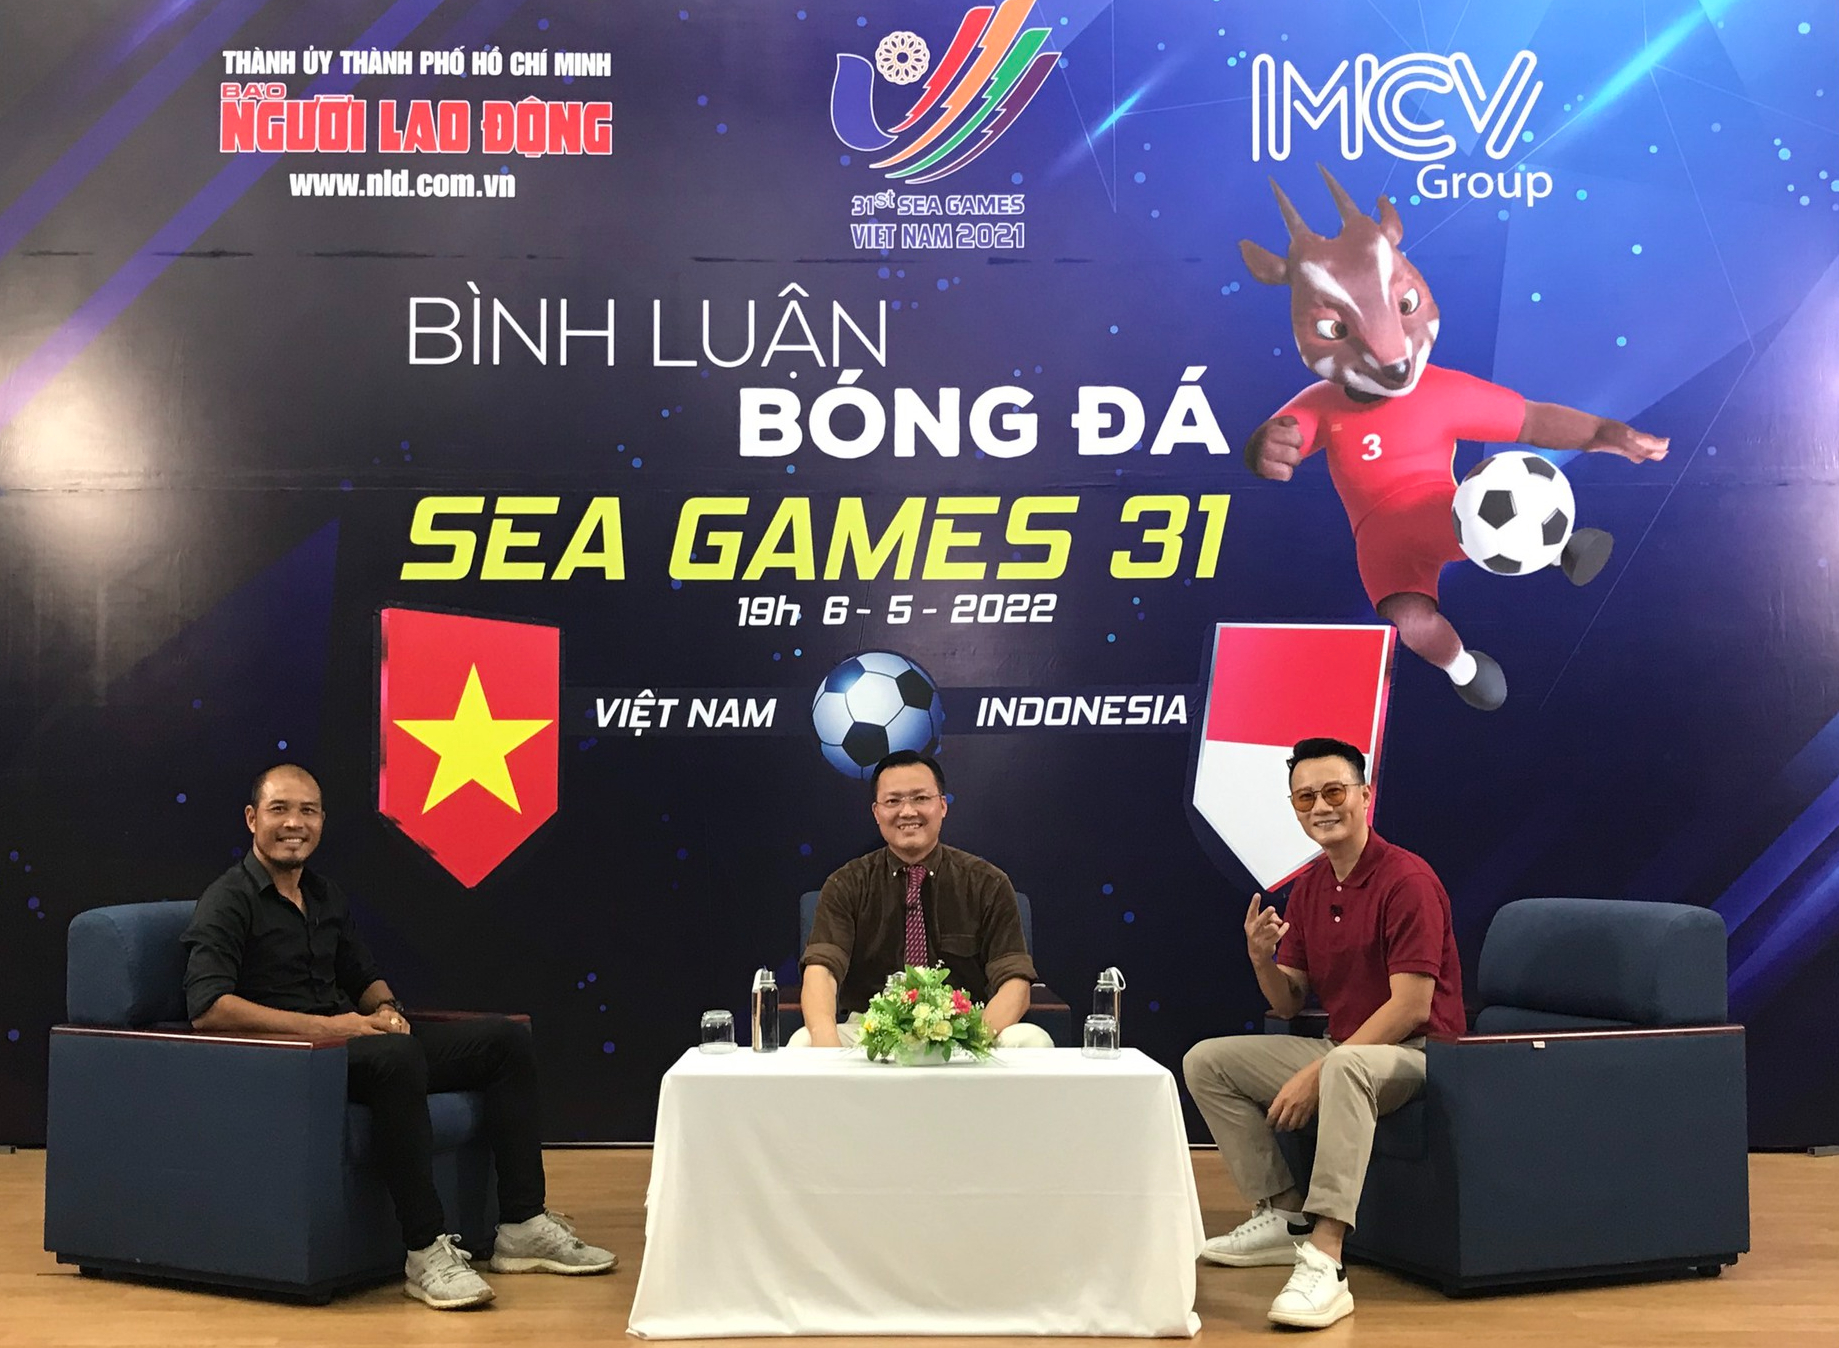 U23 Việt Nam đang là chủ đề được đặc biệt quan tâm trong cộng đồng bóng đá Việt Nam. Cùng xem lại những trận đấu hào hứng, kịch tính và không kém phần gay cấn của đội tuyển U23 Việt Nam trong các giải đấu quốc tế. Dù kết quả thế nào đi chăng nữa, các cô gái và chàng trai của chúng ta luôn được ủng hộ.